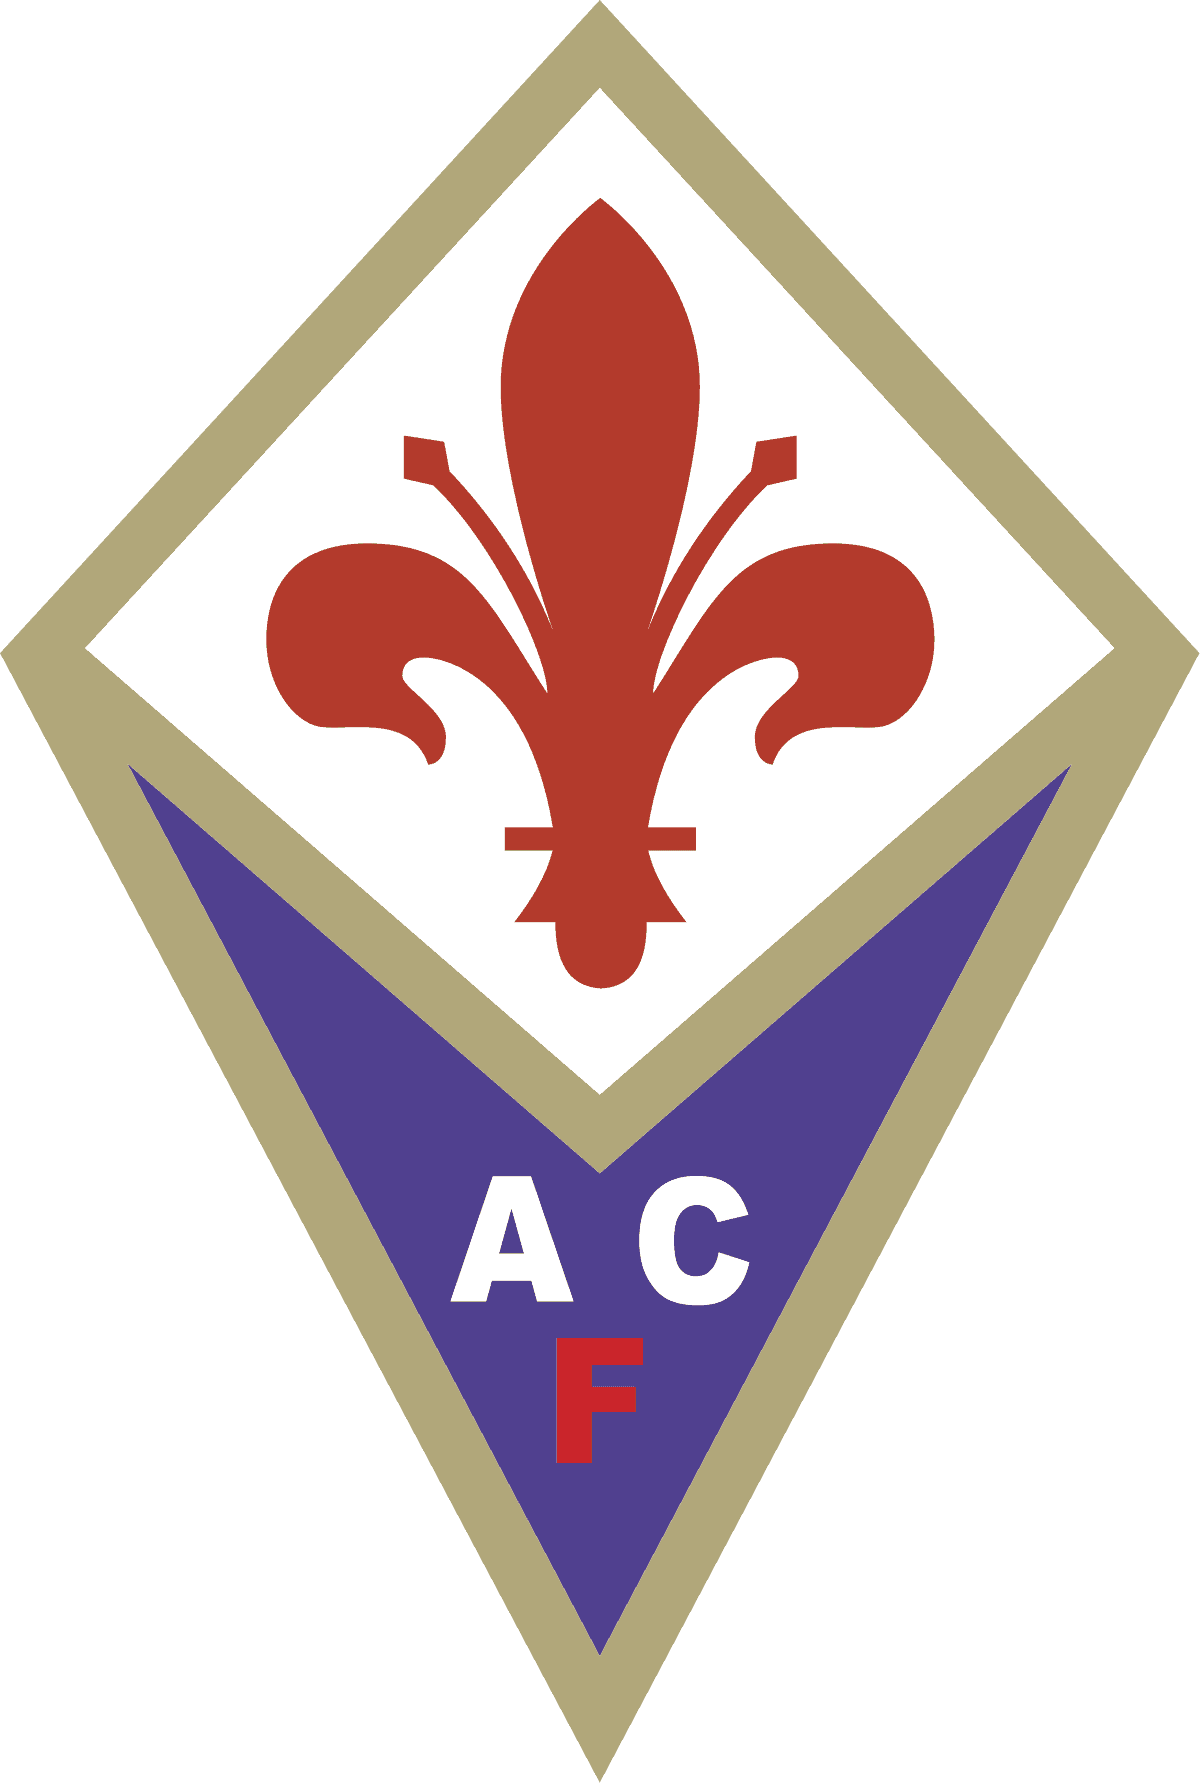 Domani sera, presso lo Stadio Artemio Franchi, alle ore 20:45, si disputerà il match tra Fiorentina ed Inter, valida per la 5ª di Serie A.